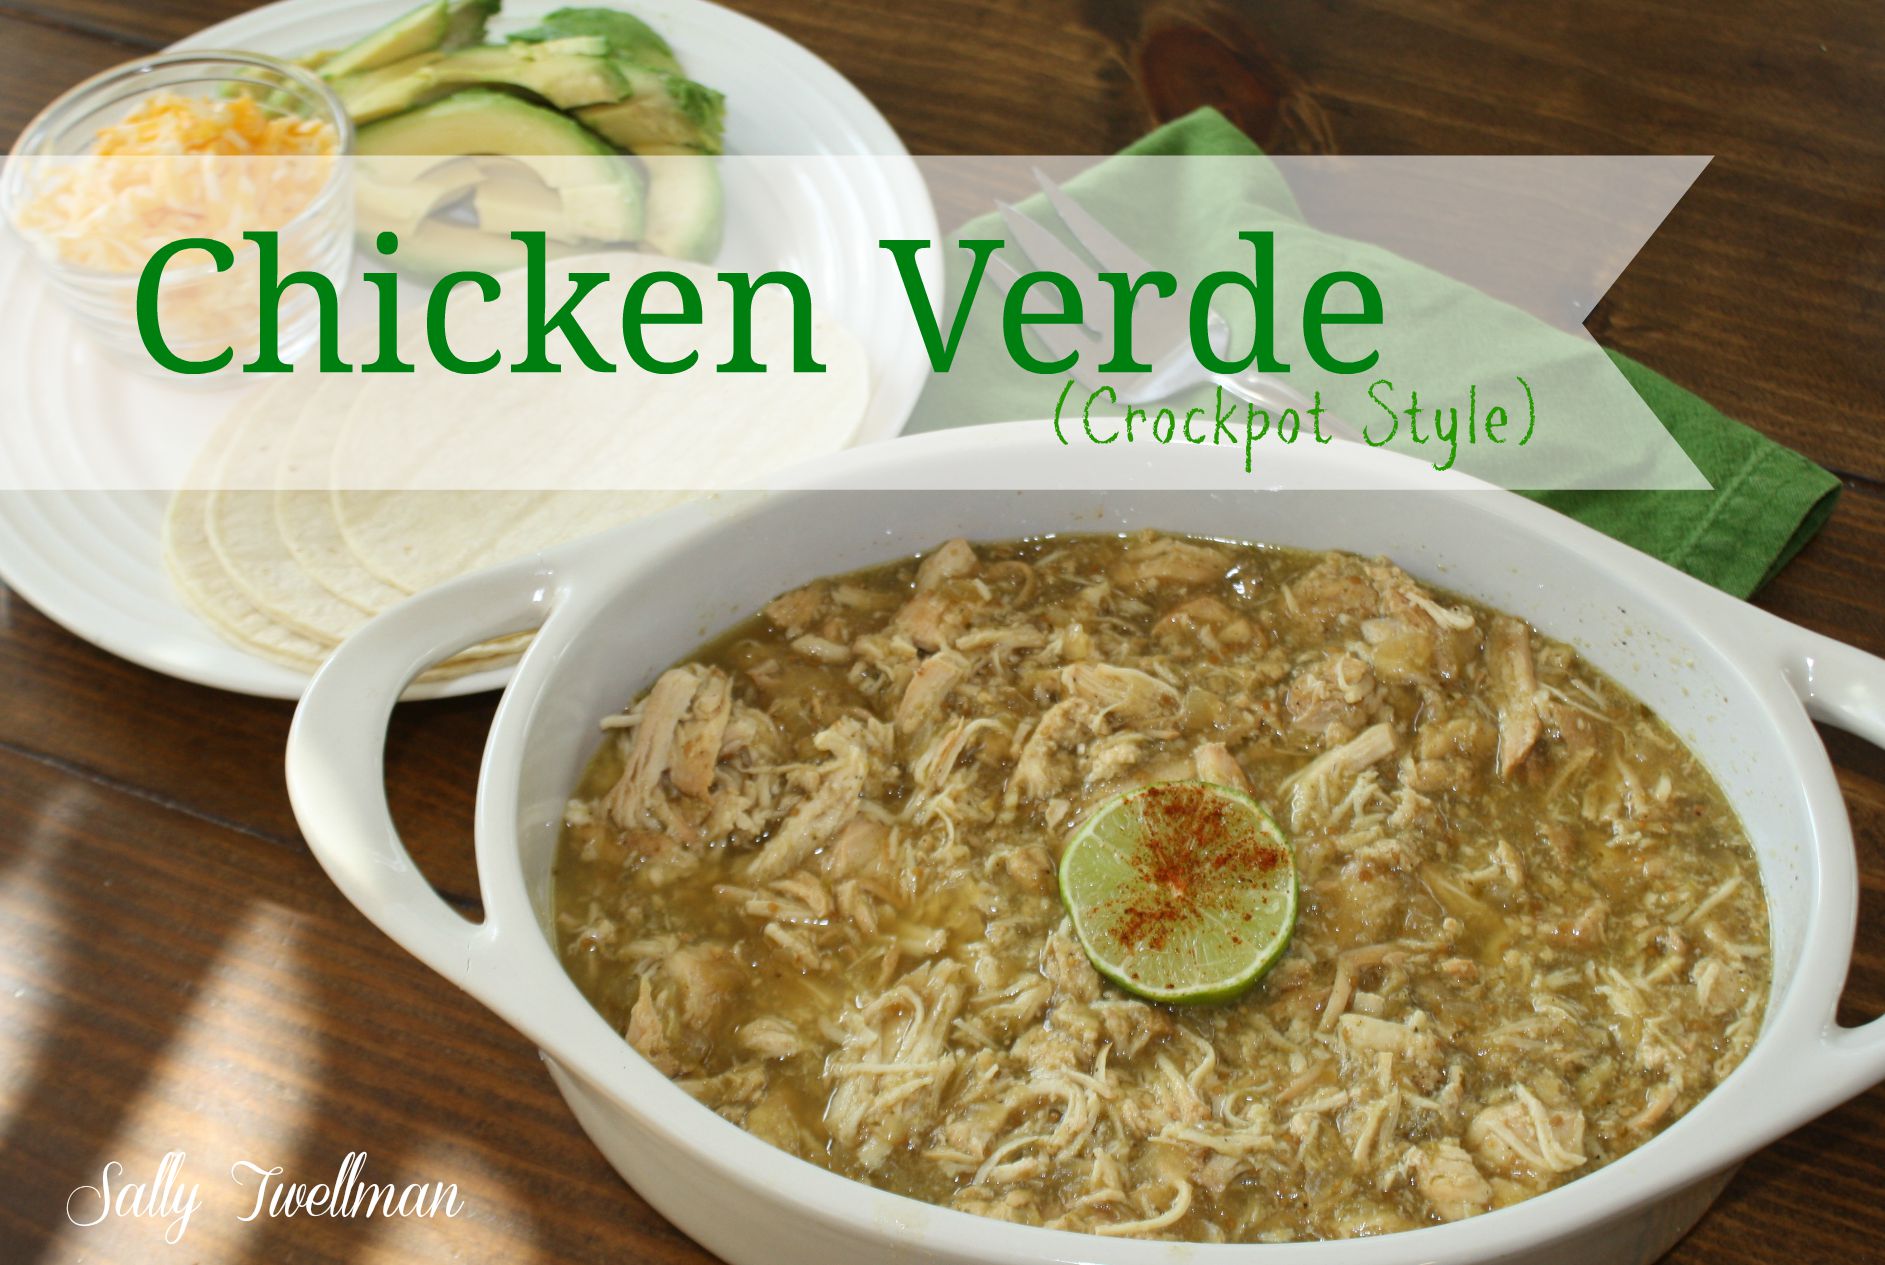 Chicken Verde (Crockpot Style)